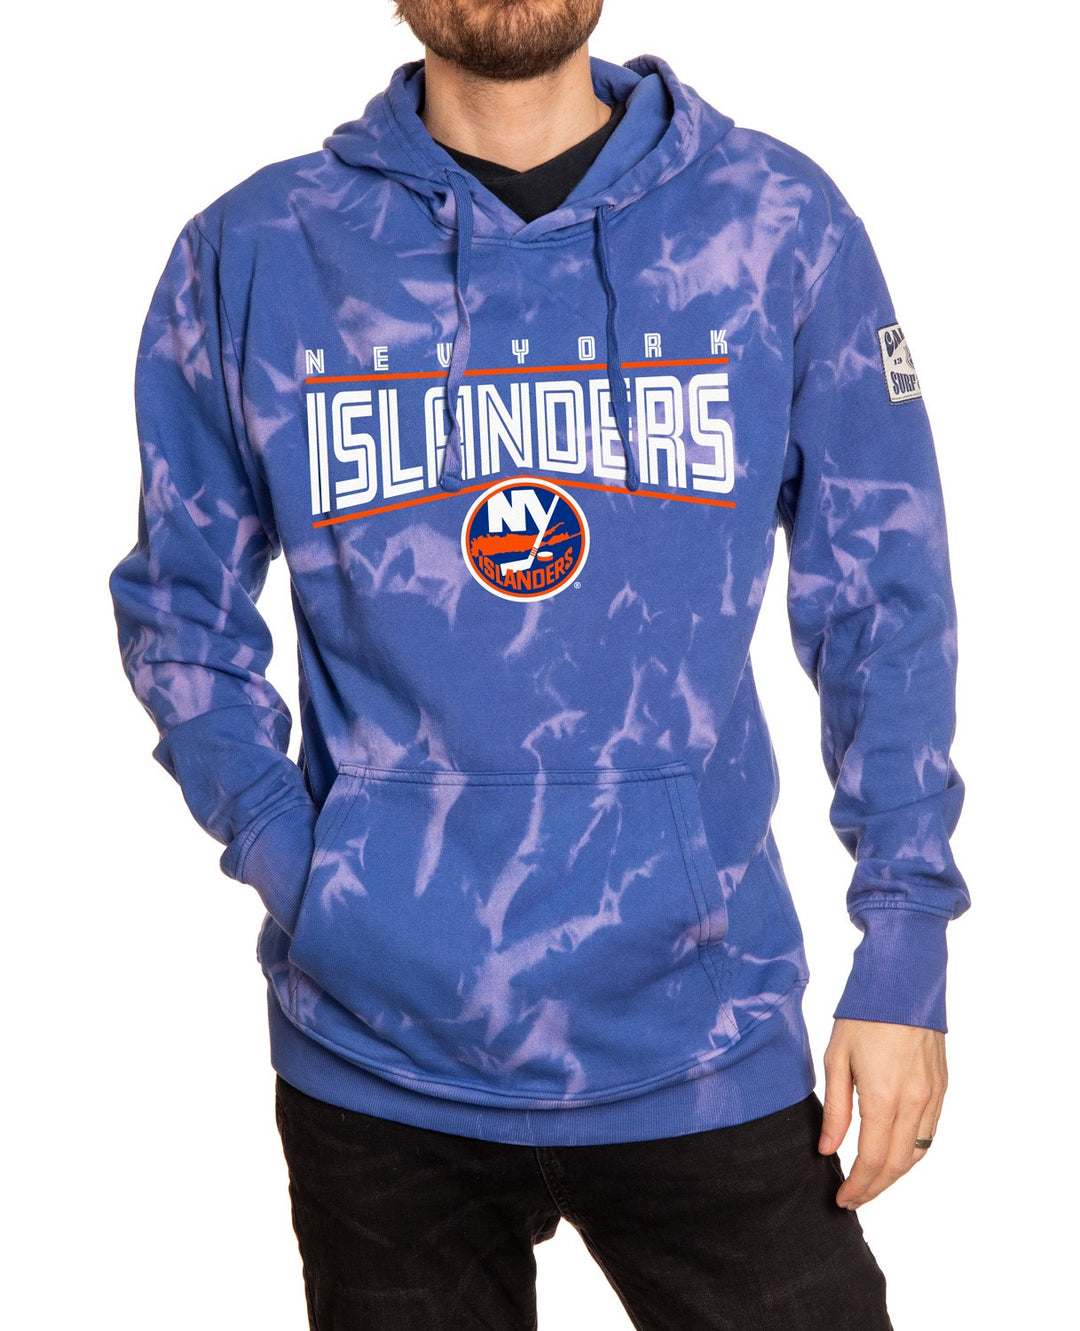 New York Islanders Crystal Tie Dye Hoodie - Machine Wash Cold